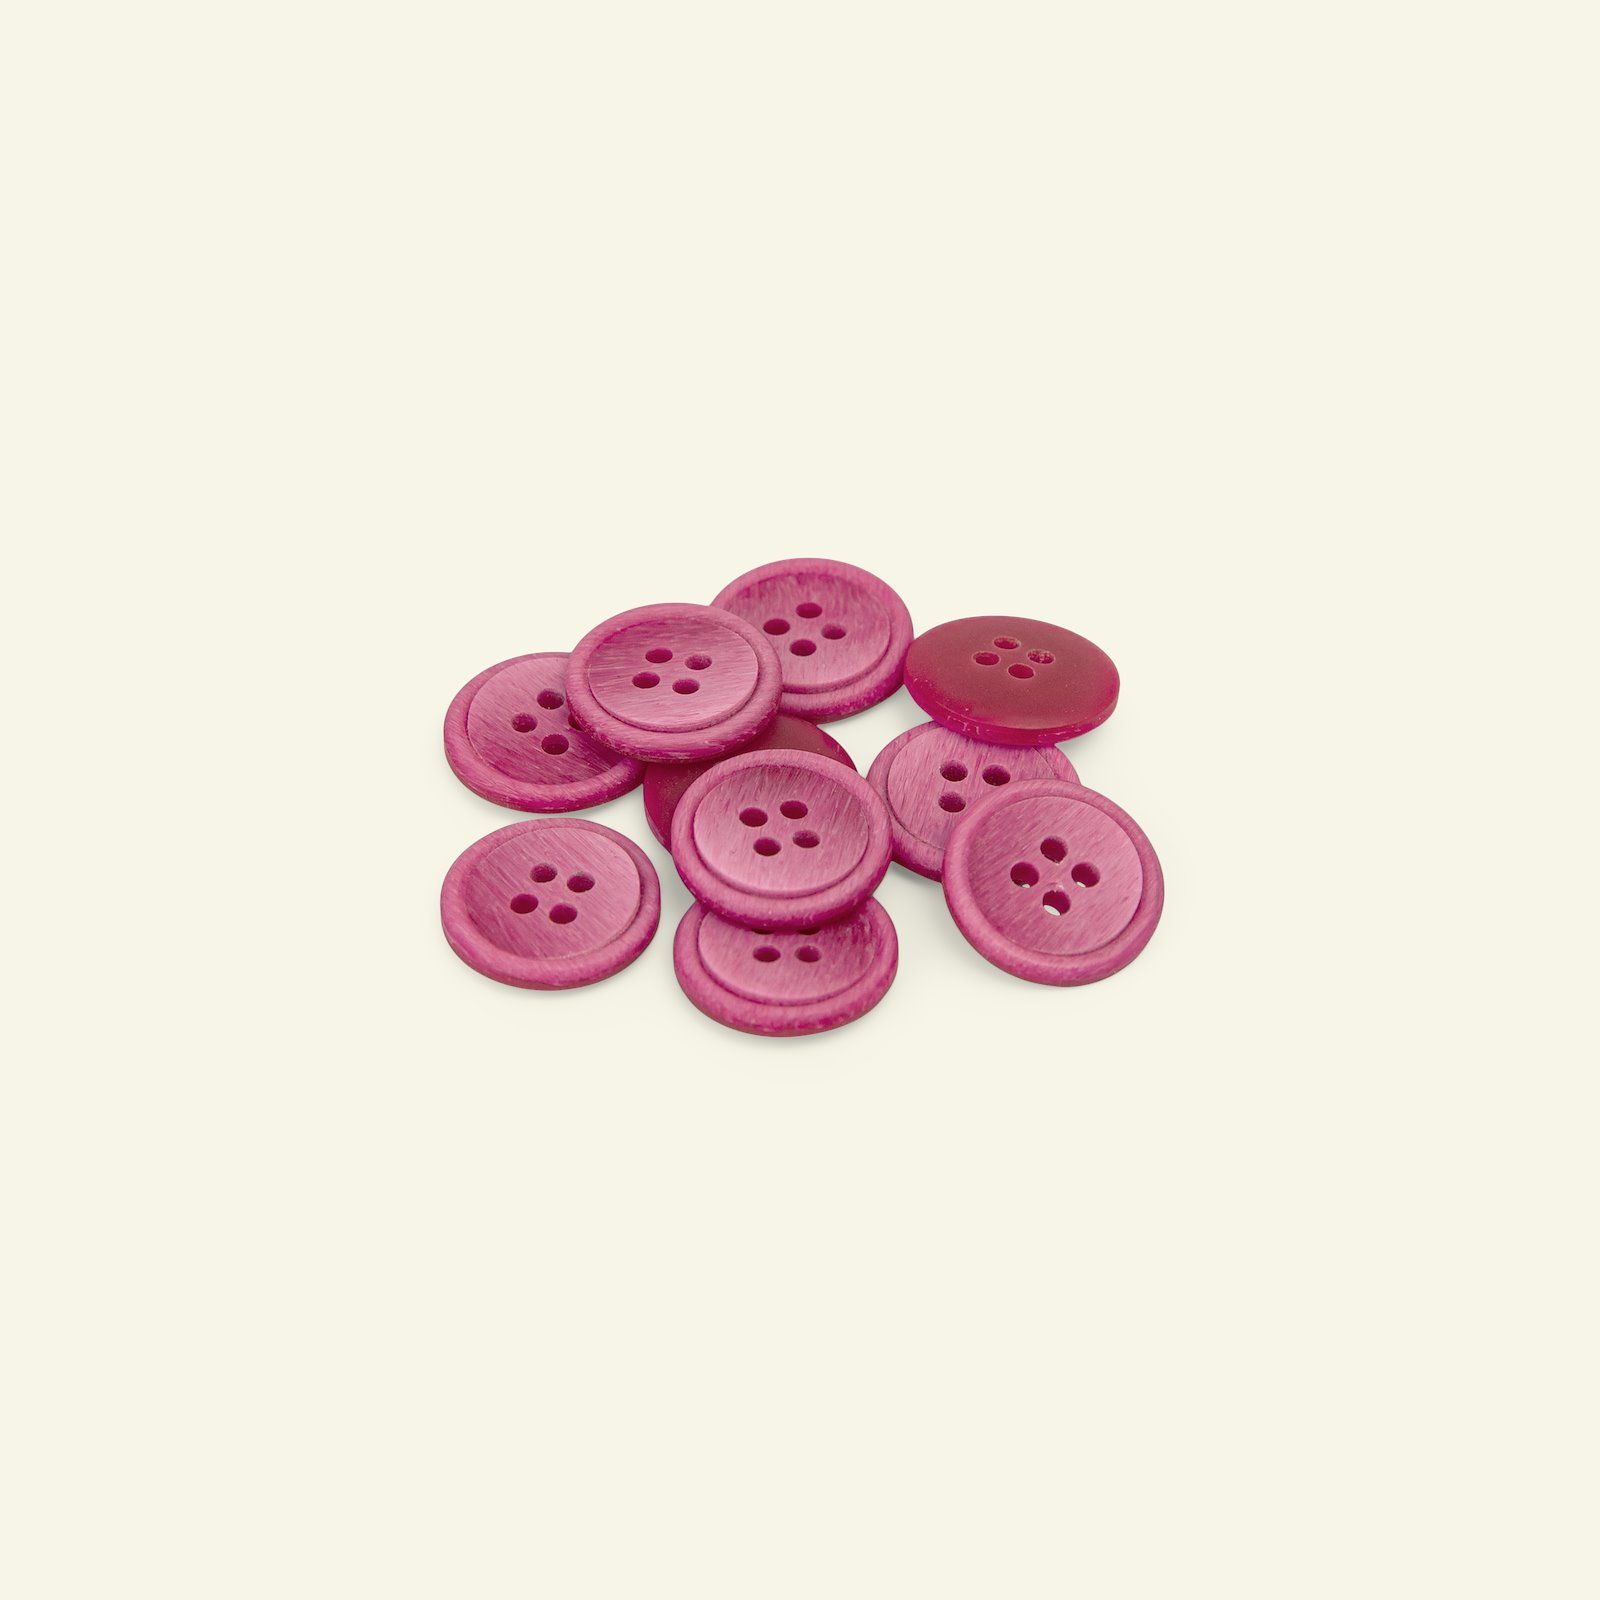 Knap 4-huls m/kant 15mm pink 10stk 33456_pack